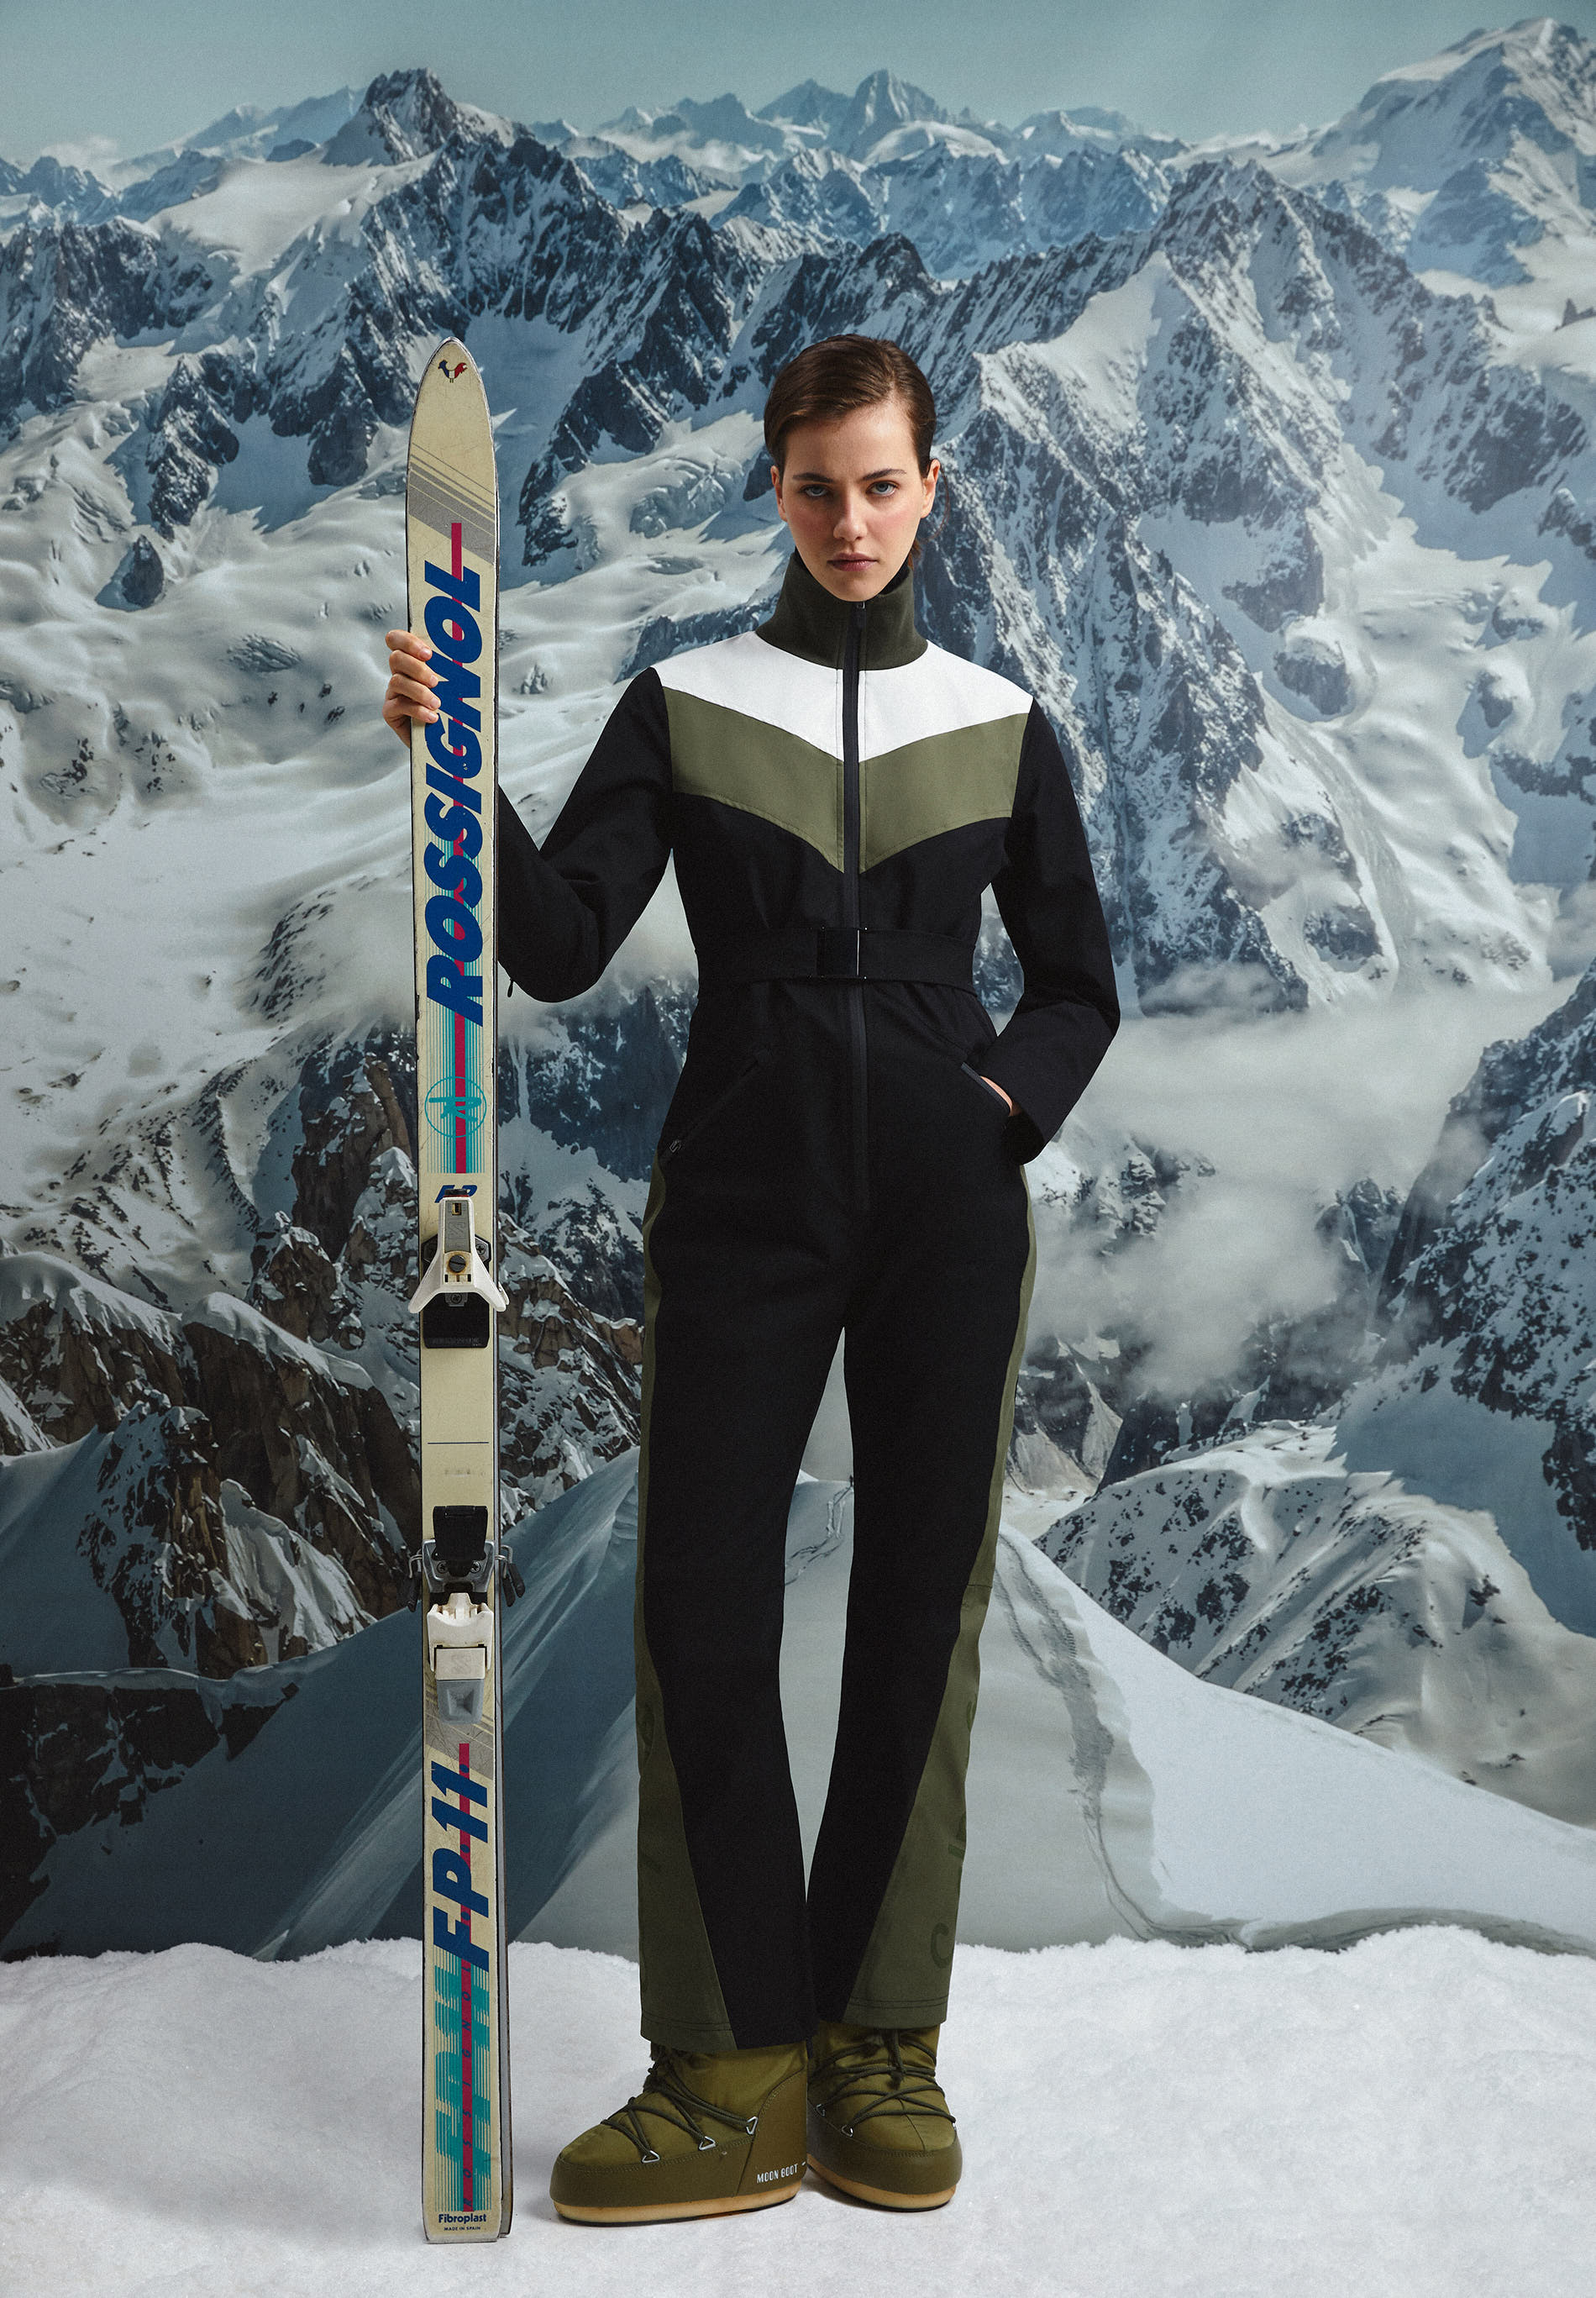 Trajes de nieve para hombre y mujer, ropa de invierno, chaqueta de esquí +  pantalones con tirantes